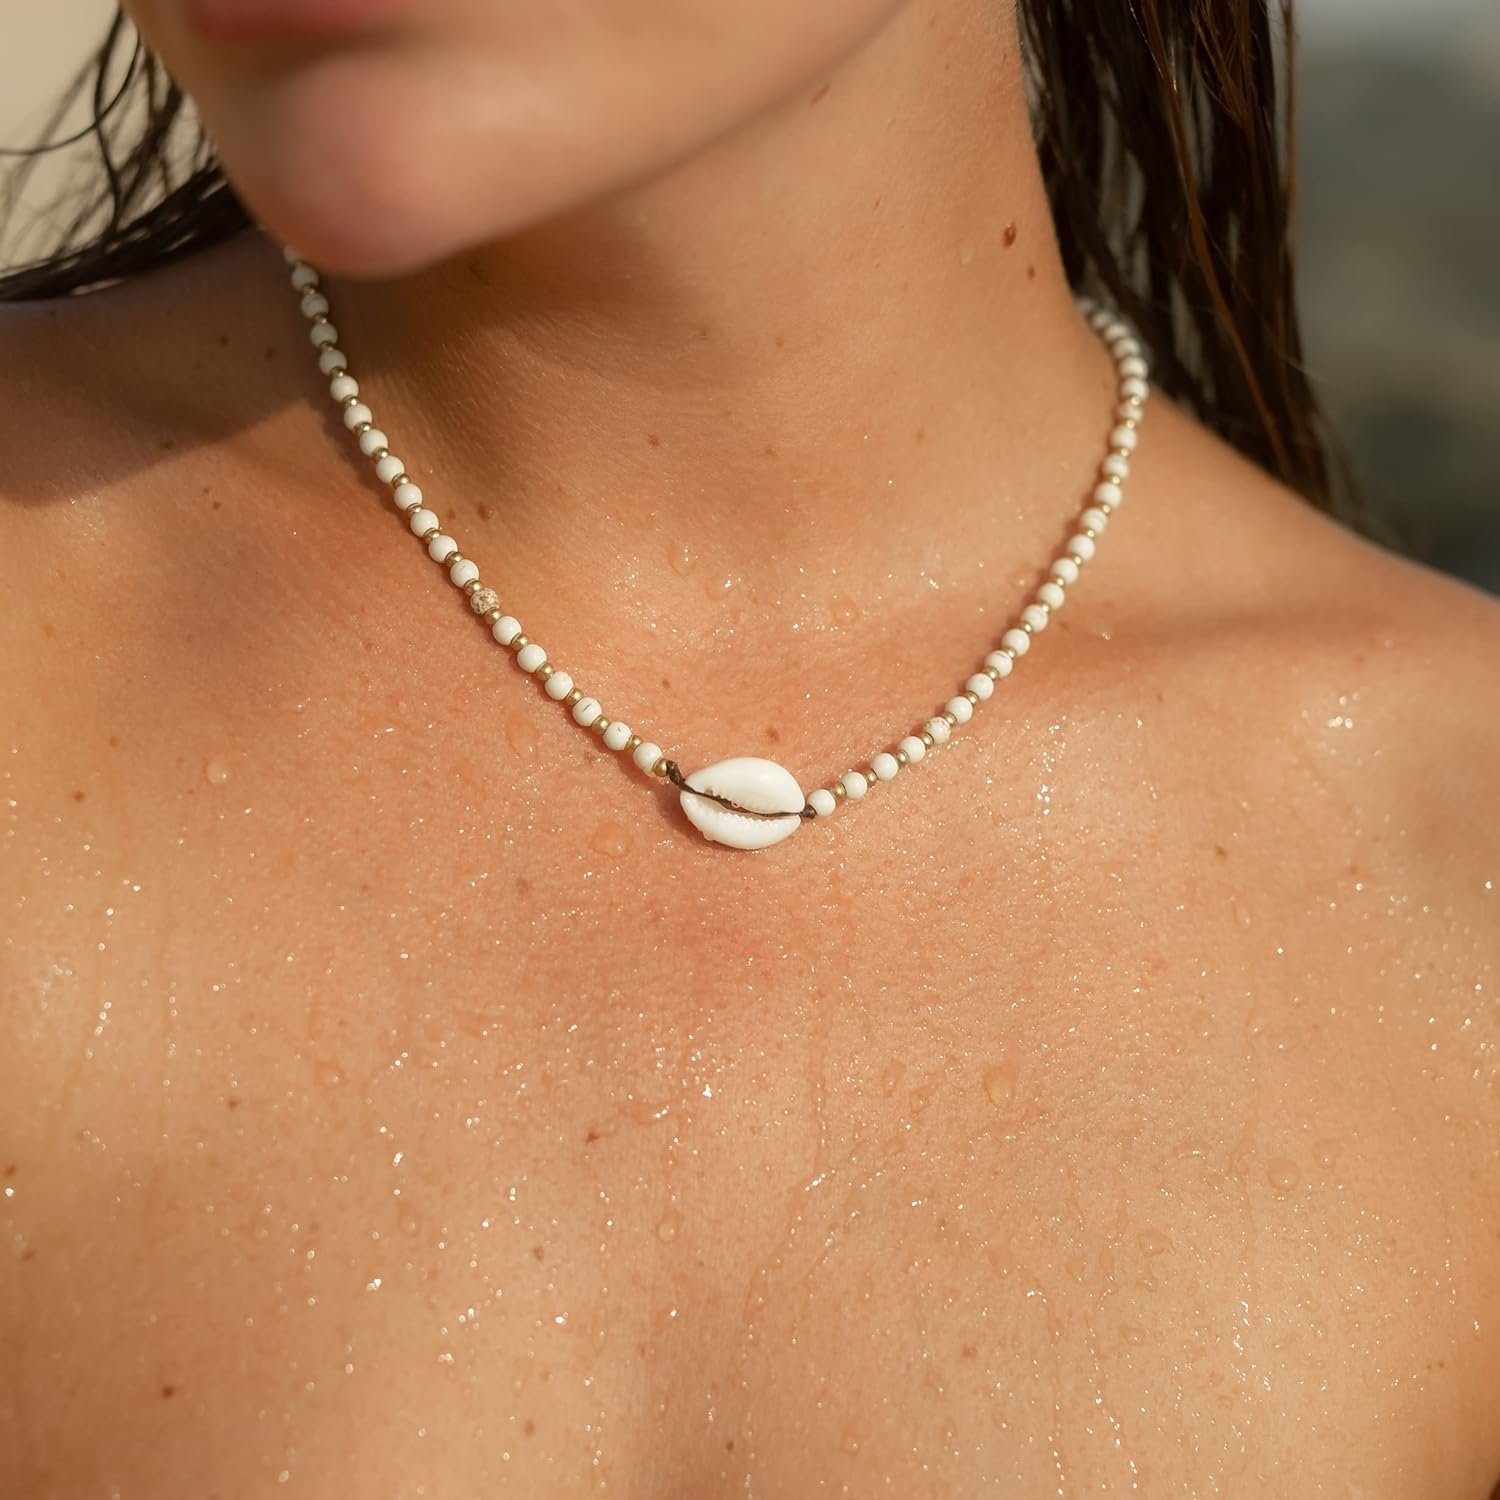 Made by Festival Perlen, Nami Perlenkette Muschel Goa Hippie Accessoires Surfer Strand Halskette Weiße